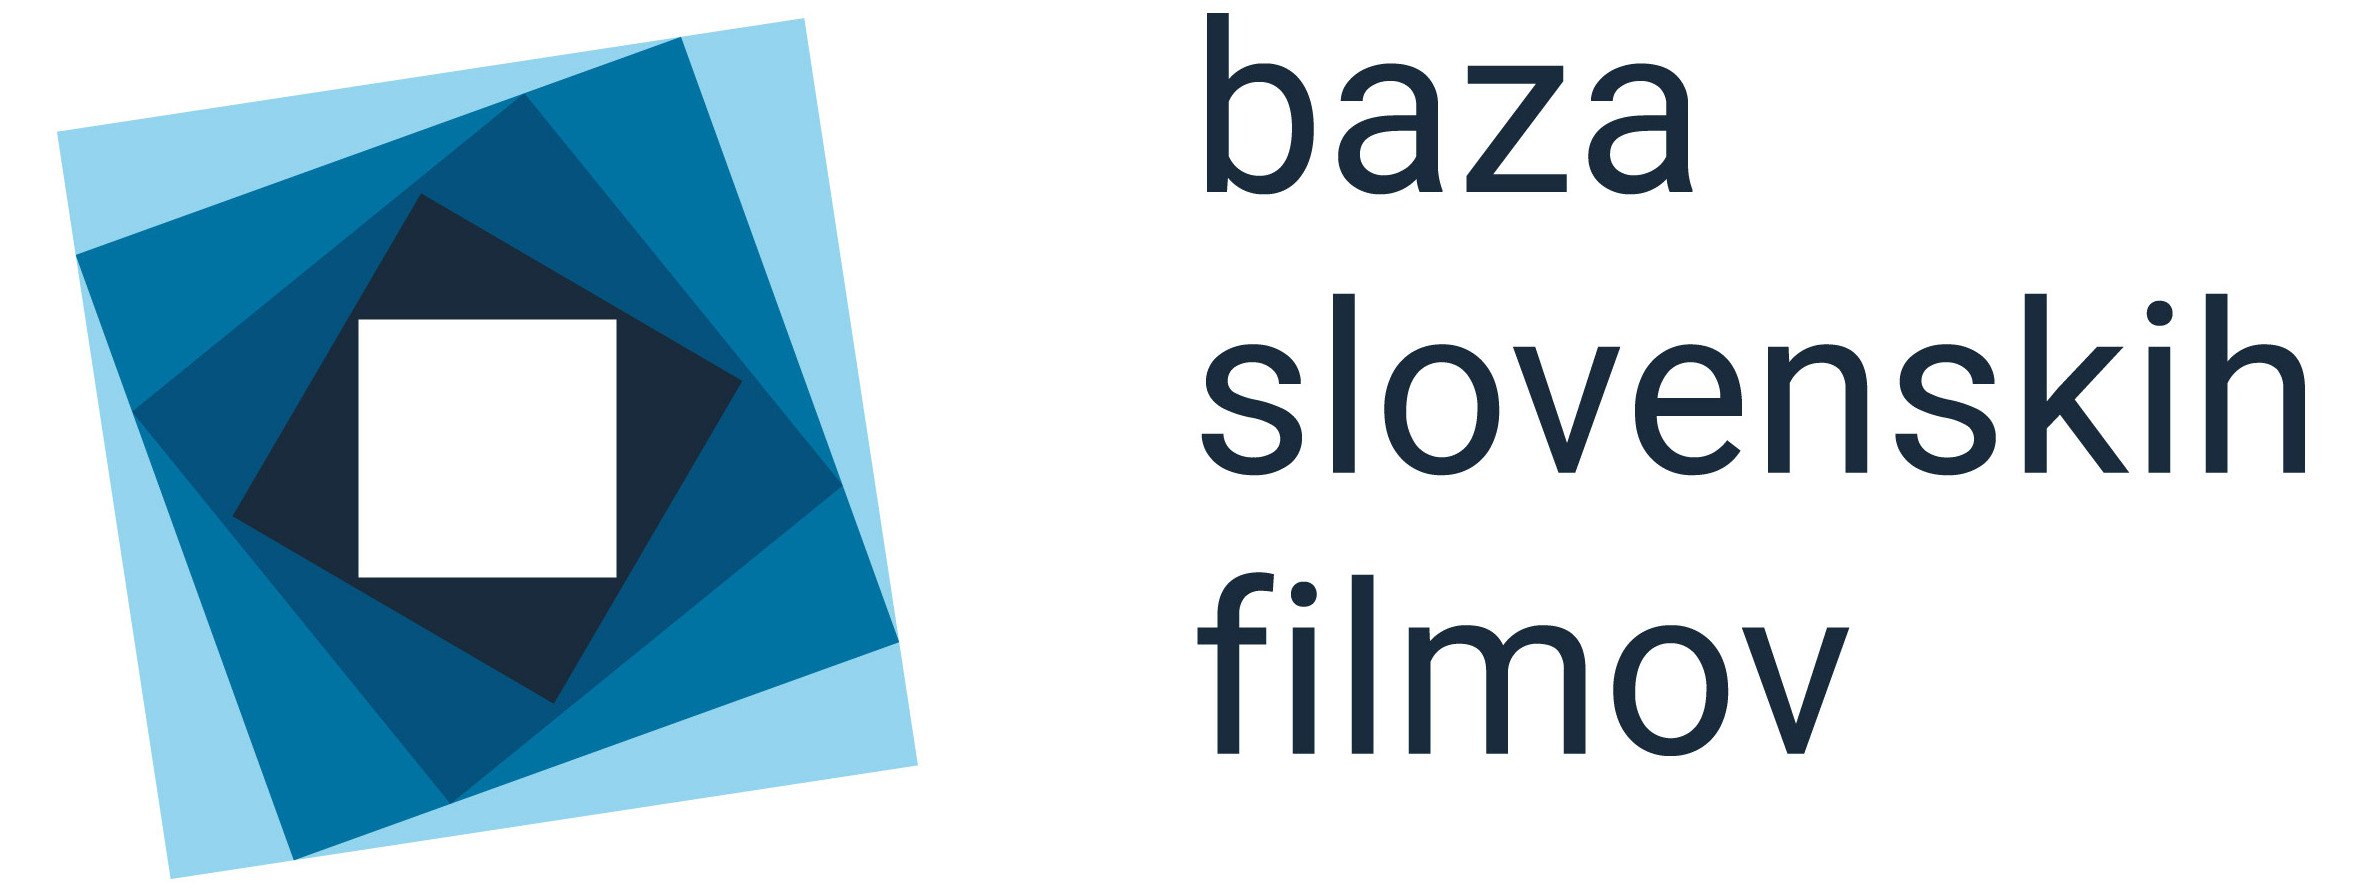 BSF Baza slovenskih filmov logotip